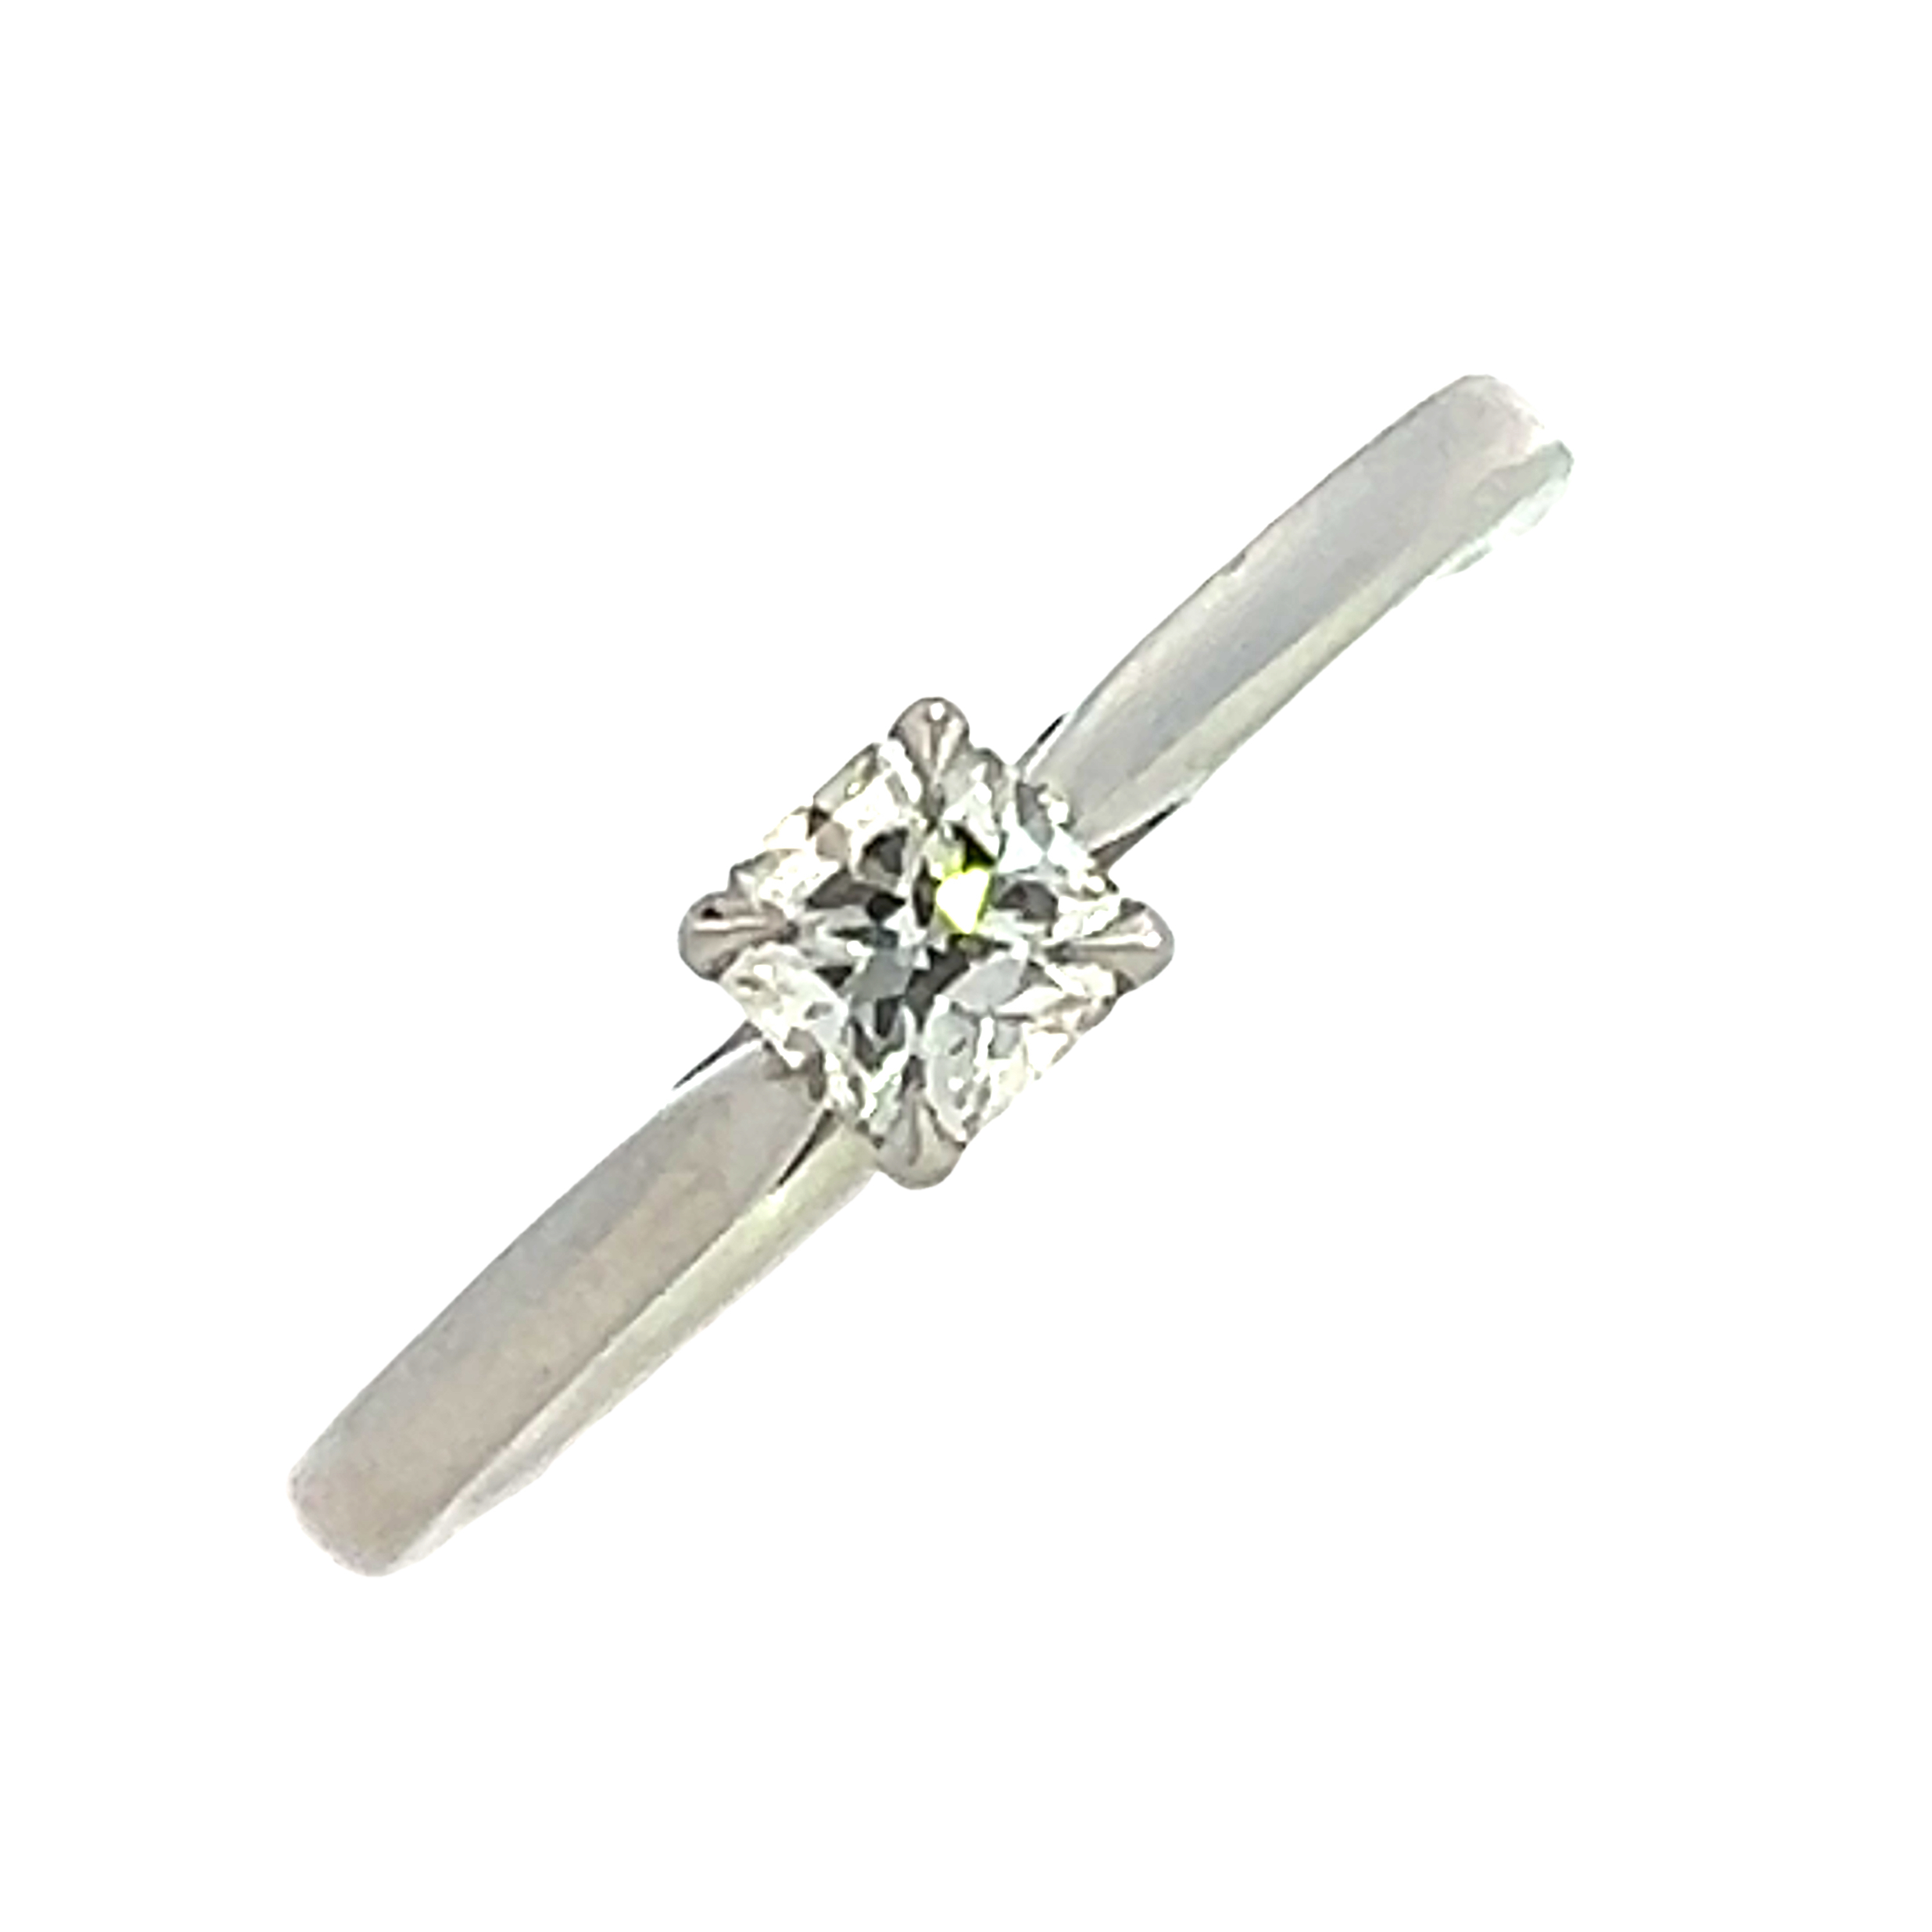 A Lucere Cut Diamond Ring in Platinum - 0.33 G/H VS